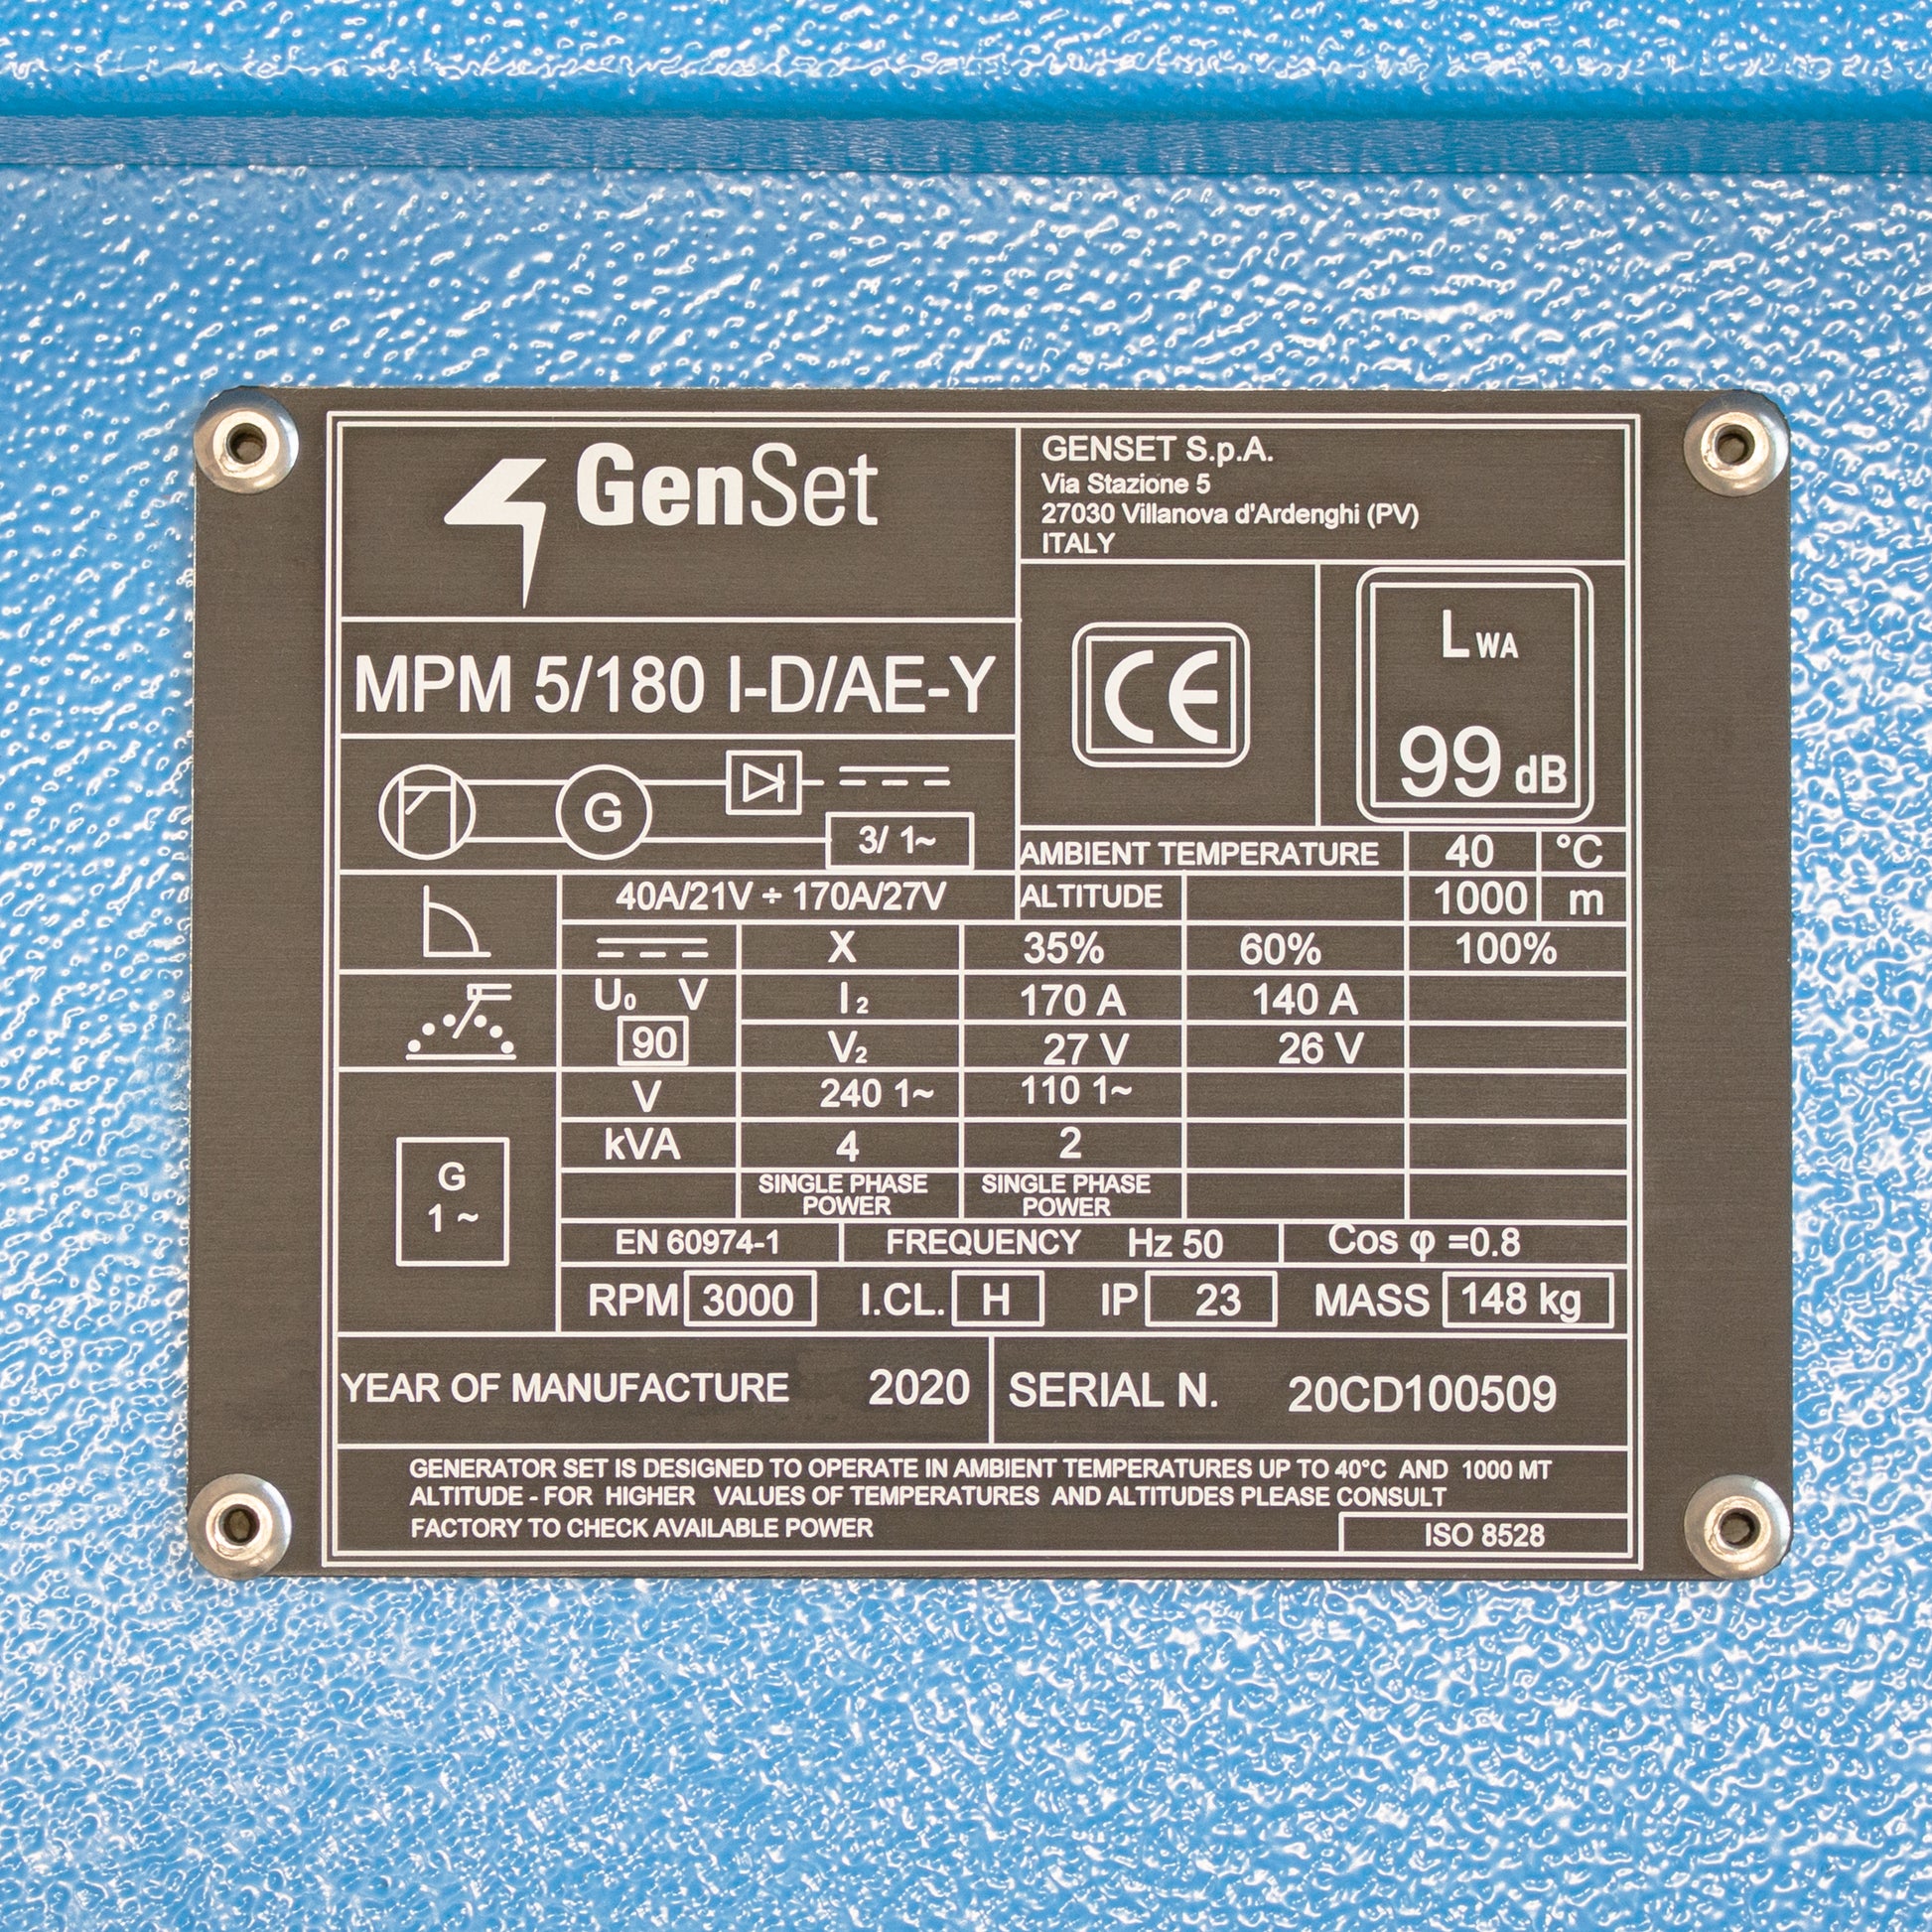 GenSet MPM 5/180 I-D/AE-Y Diesel Welder Generator